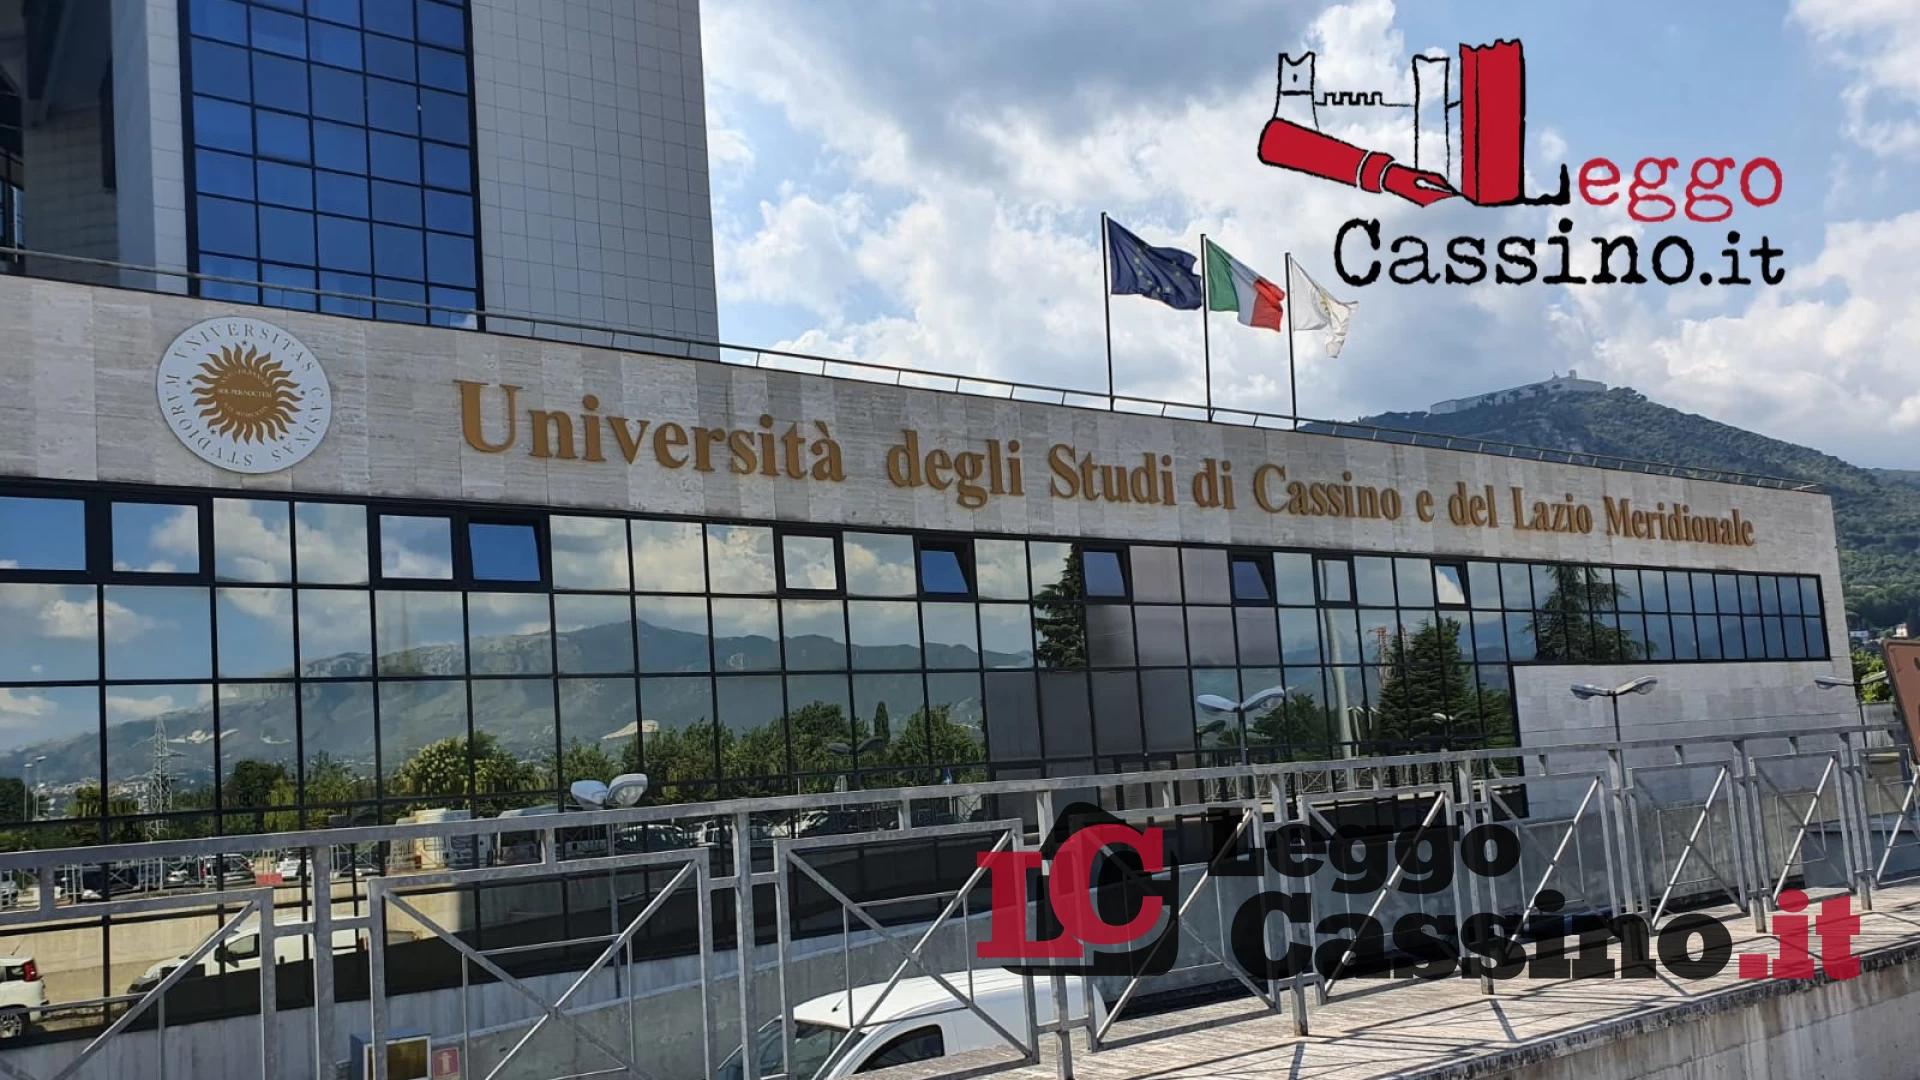 Il Circolo Ricreativo dell'Università di Cassino organizza un’attività culturale